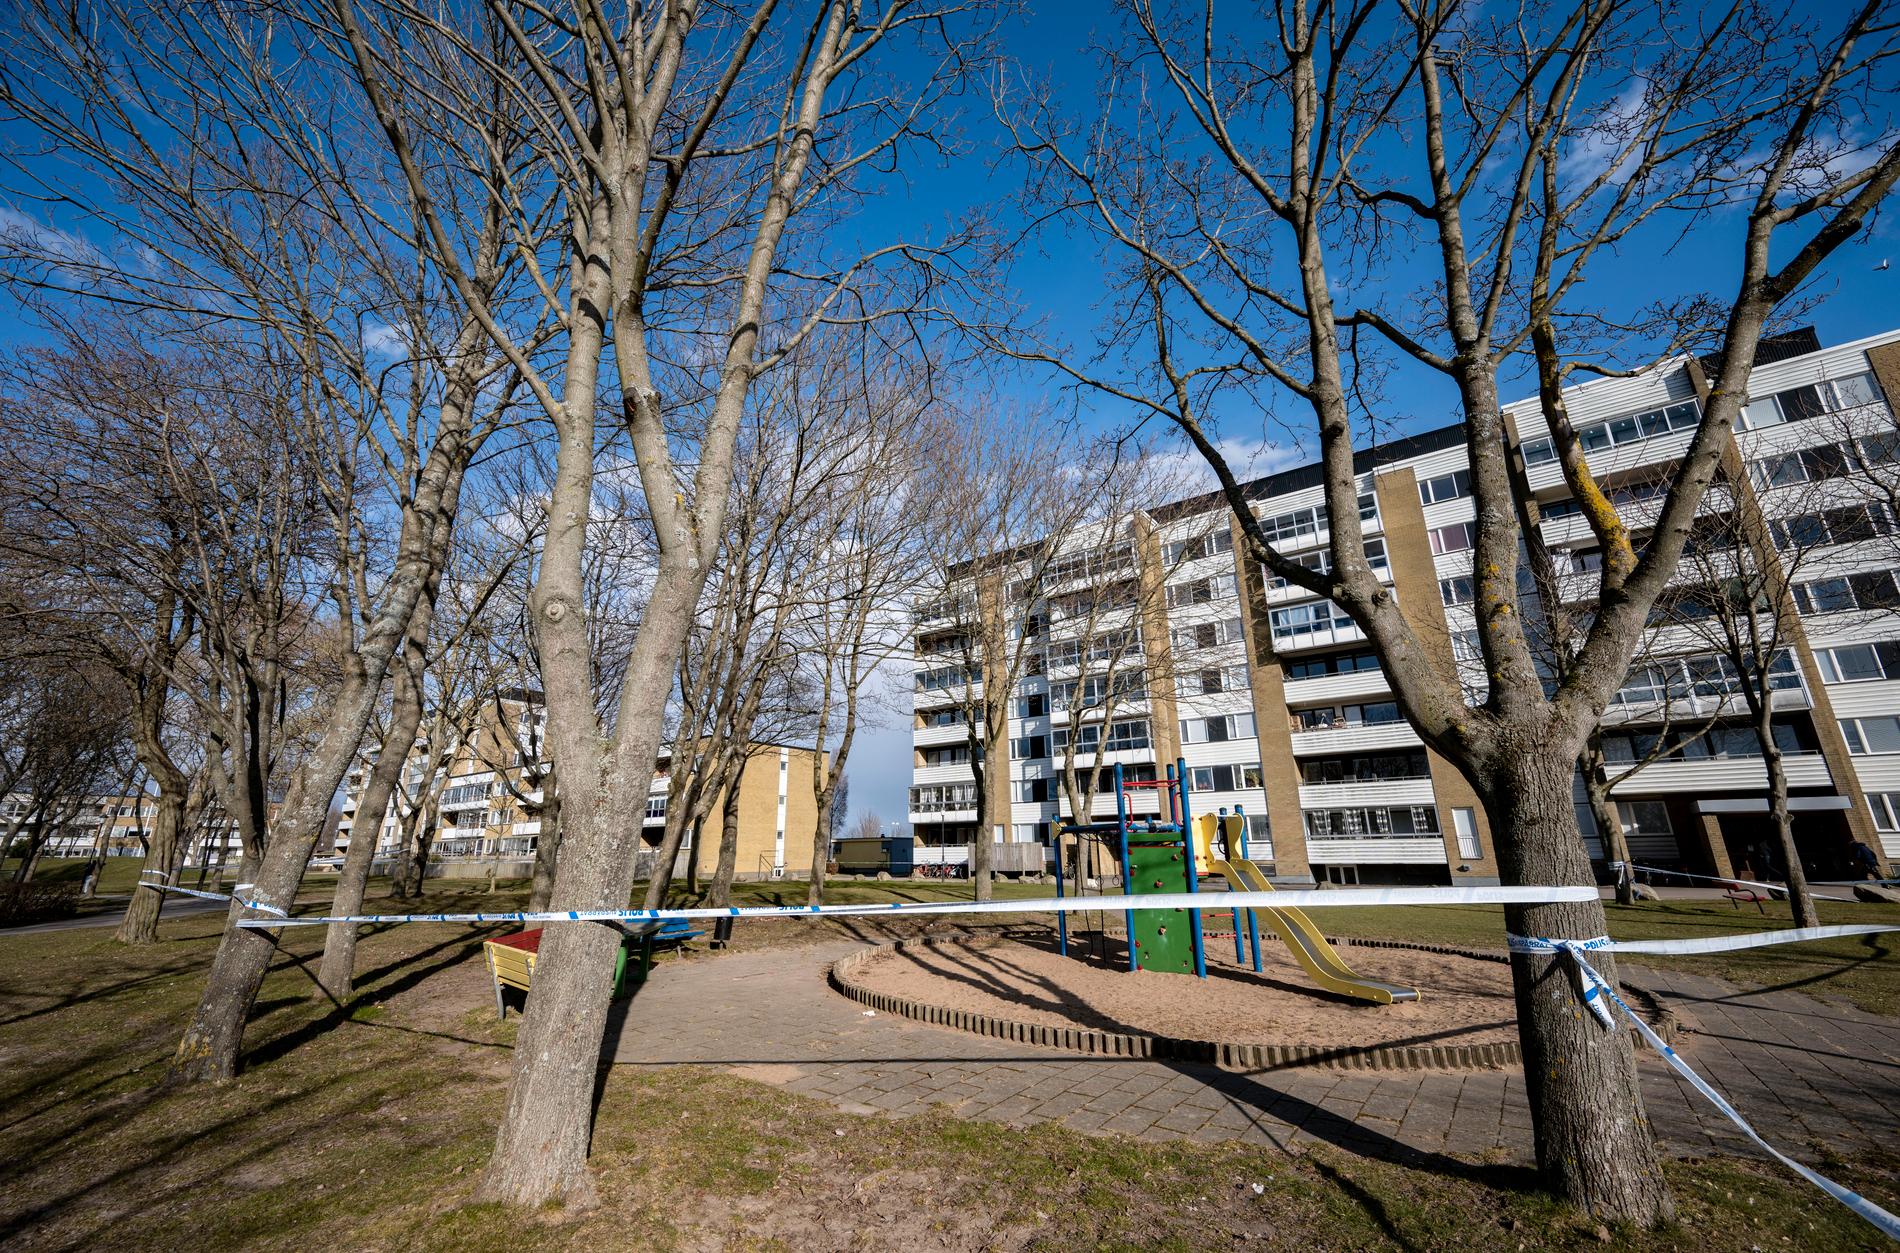 Två personer hittades skadade utomhus i Landskrona i början av april och den ene av dem avled senare på sjukhus. Nu åtalas fyra personer. Arkivbild.